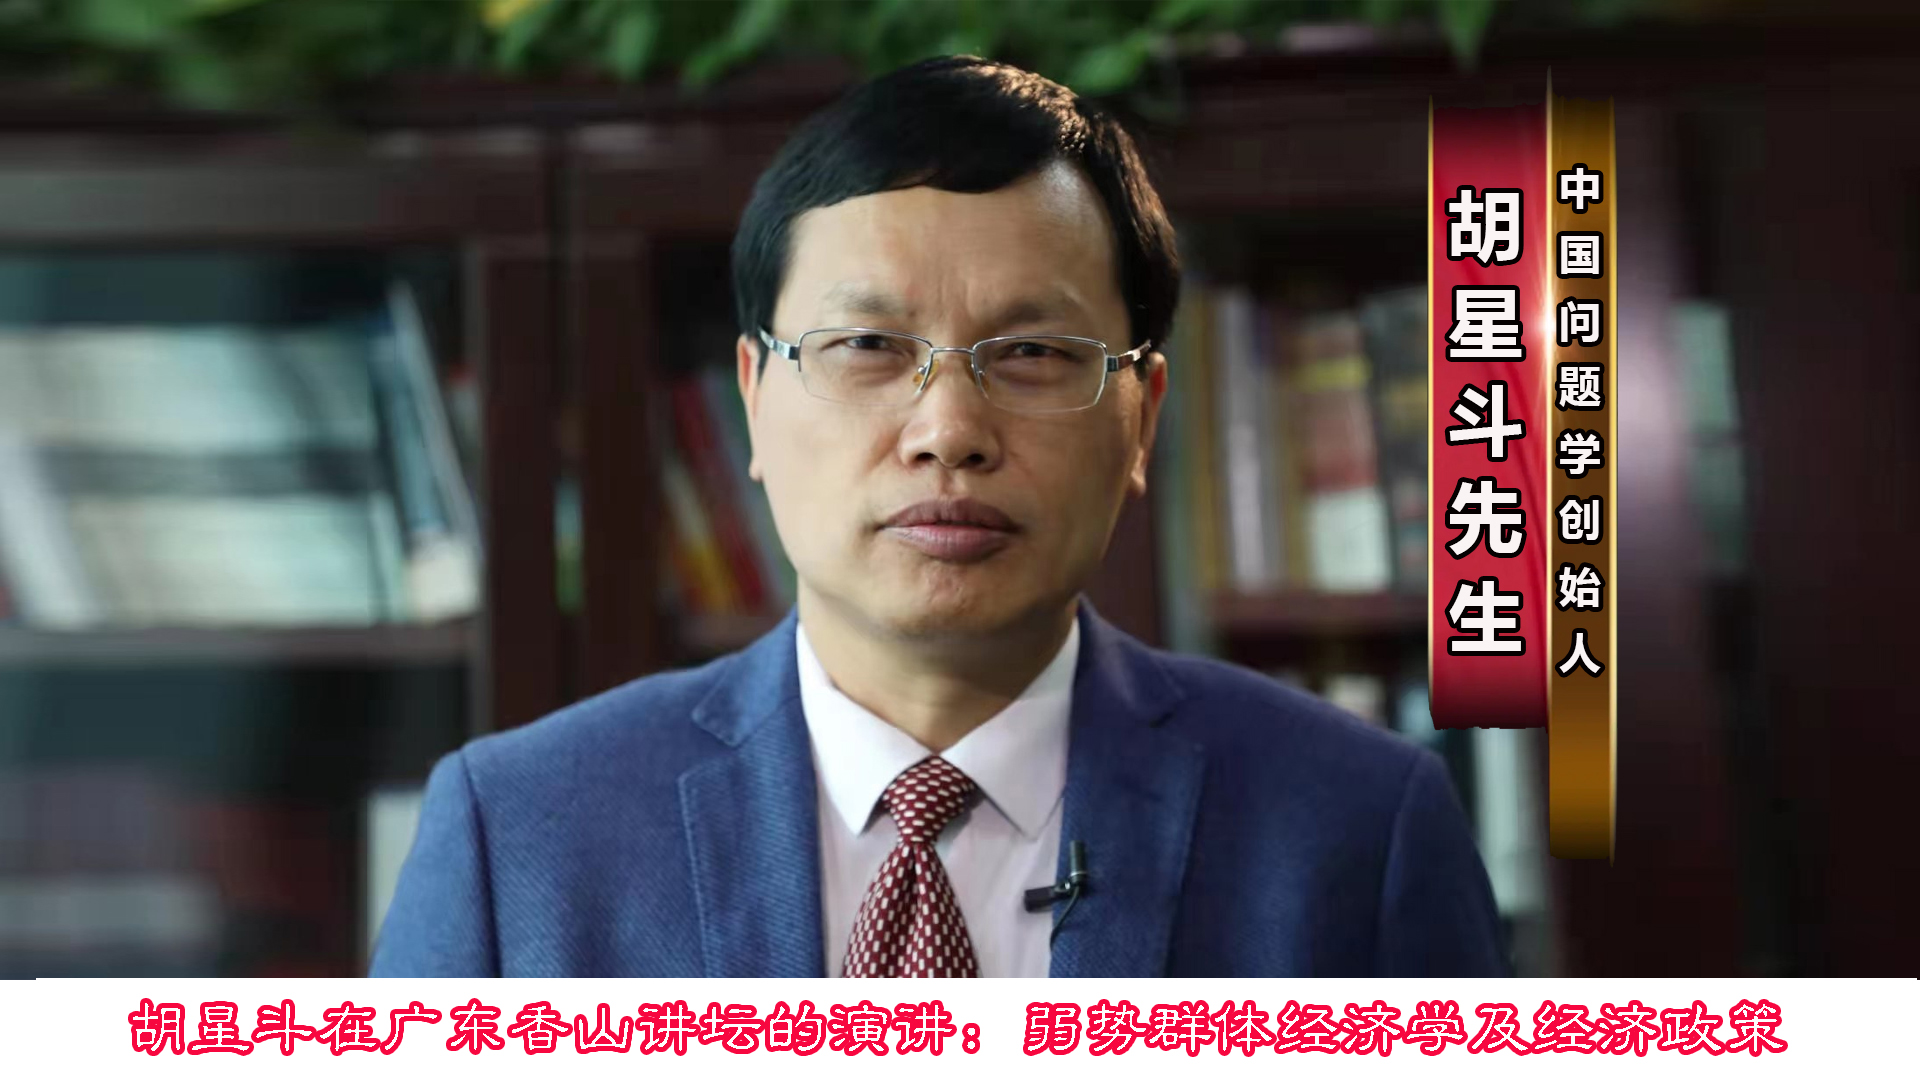 胡星斗在广东香山讲坛的演讲:弱势群体经济学及经济政策